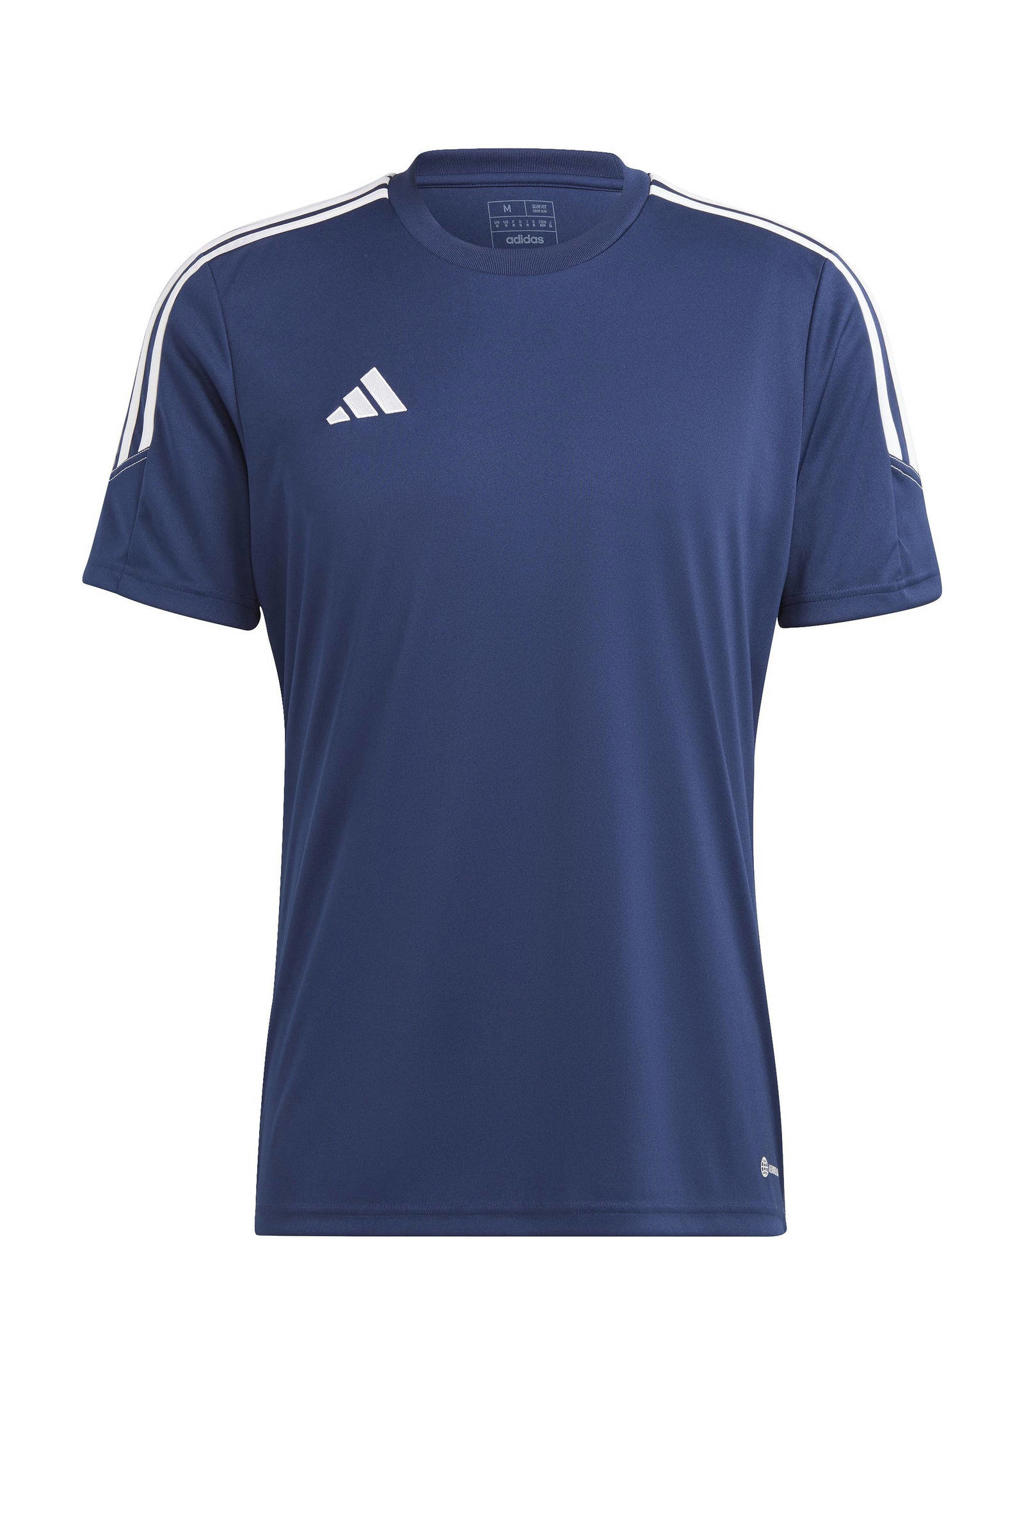 Donkerblauw en witte heren adidas Performance sport T-shirt Tiro 23 van polyester met logo dessin, korte mouwen en ronde hals